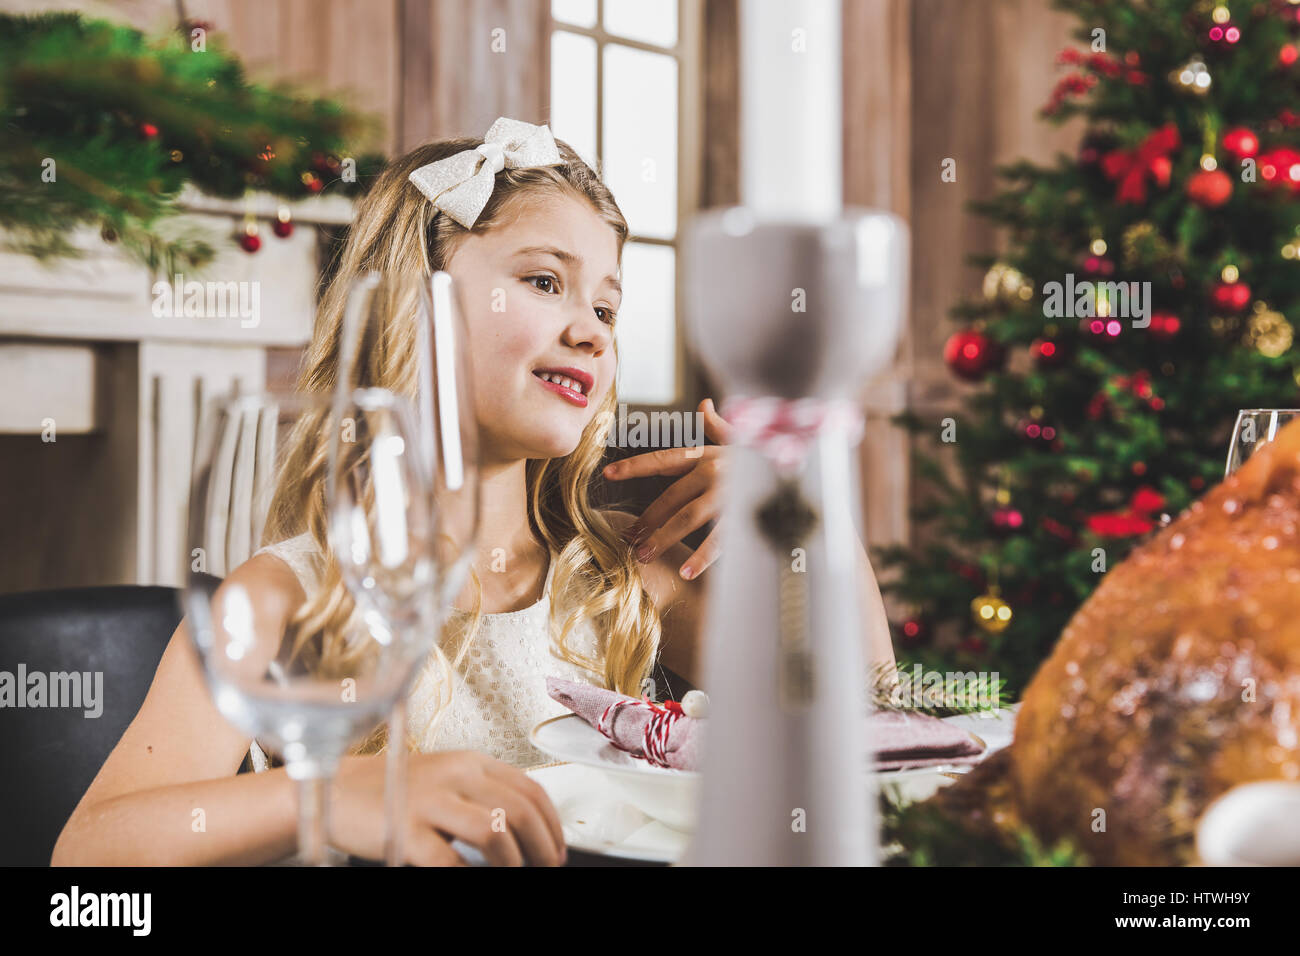 Cute smiling girl sitting at table de vacances au moment de Noël Banque D'Images